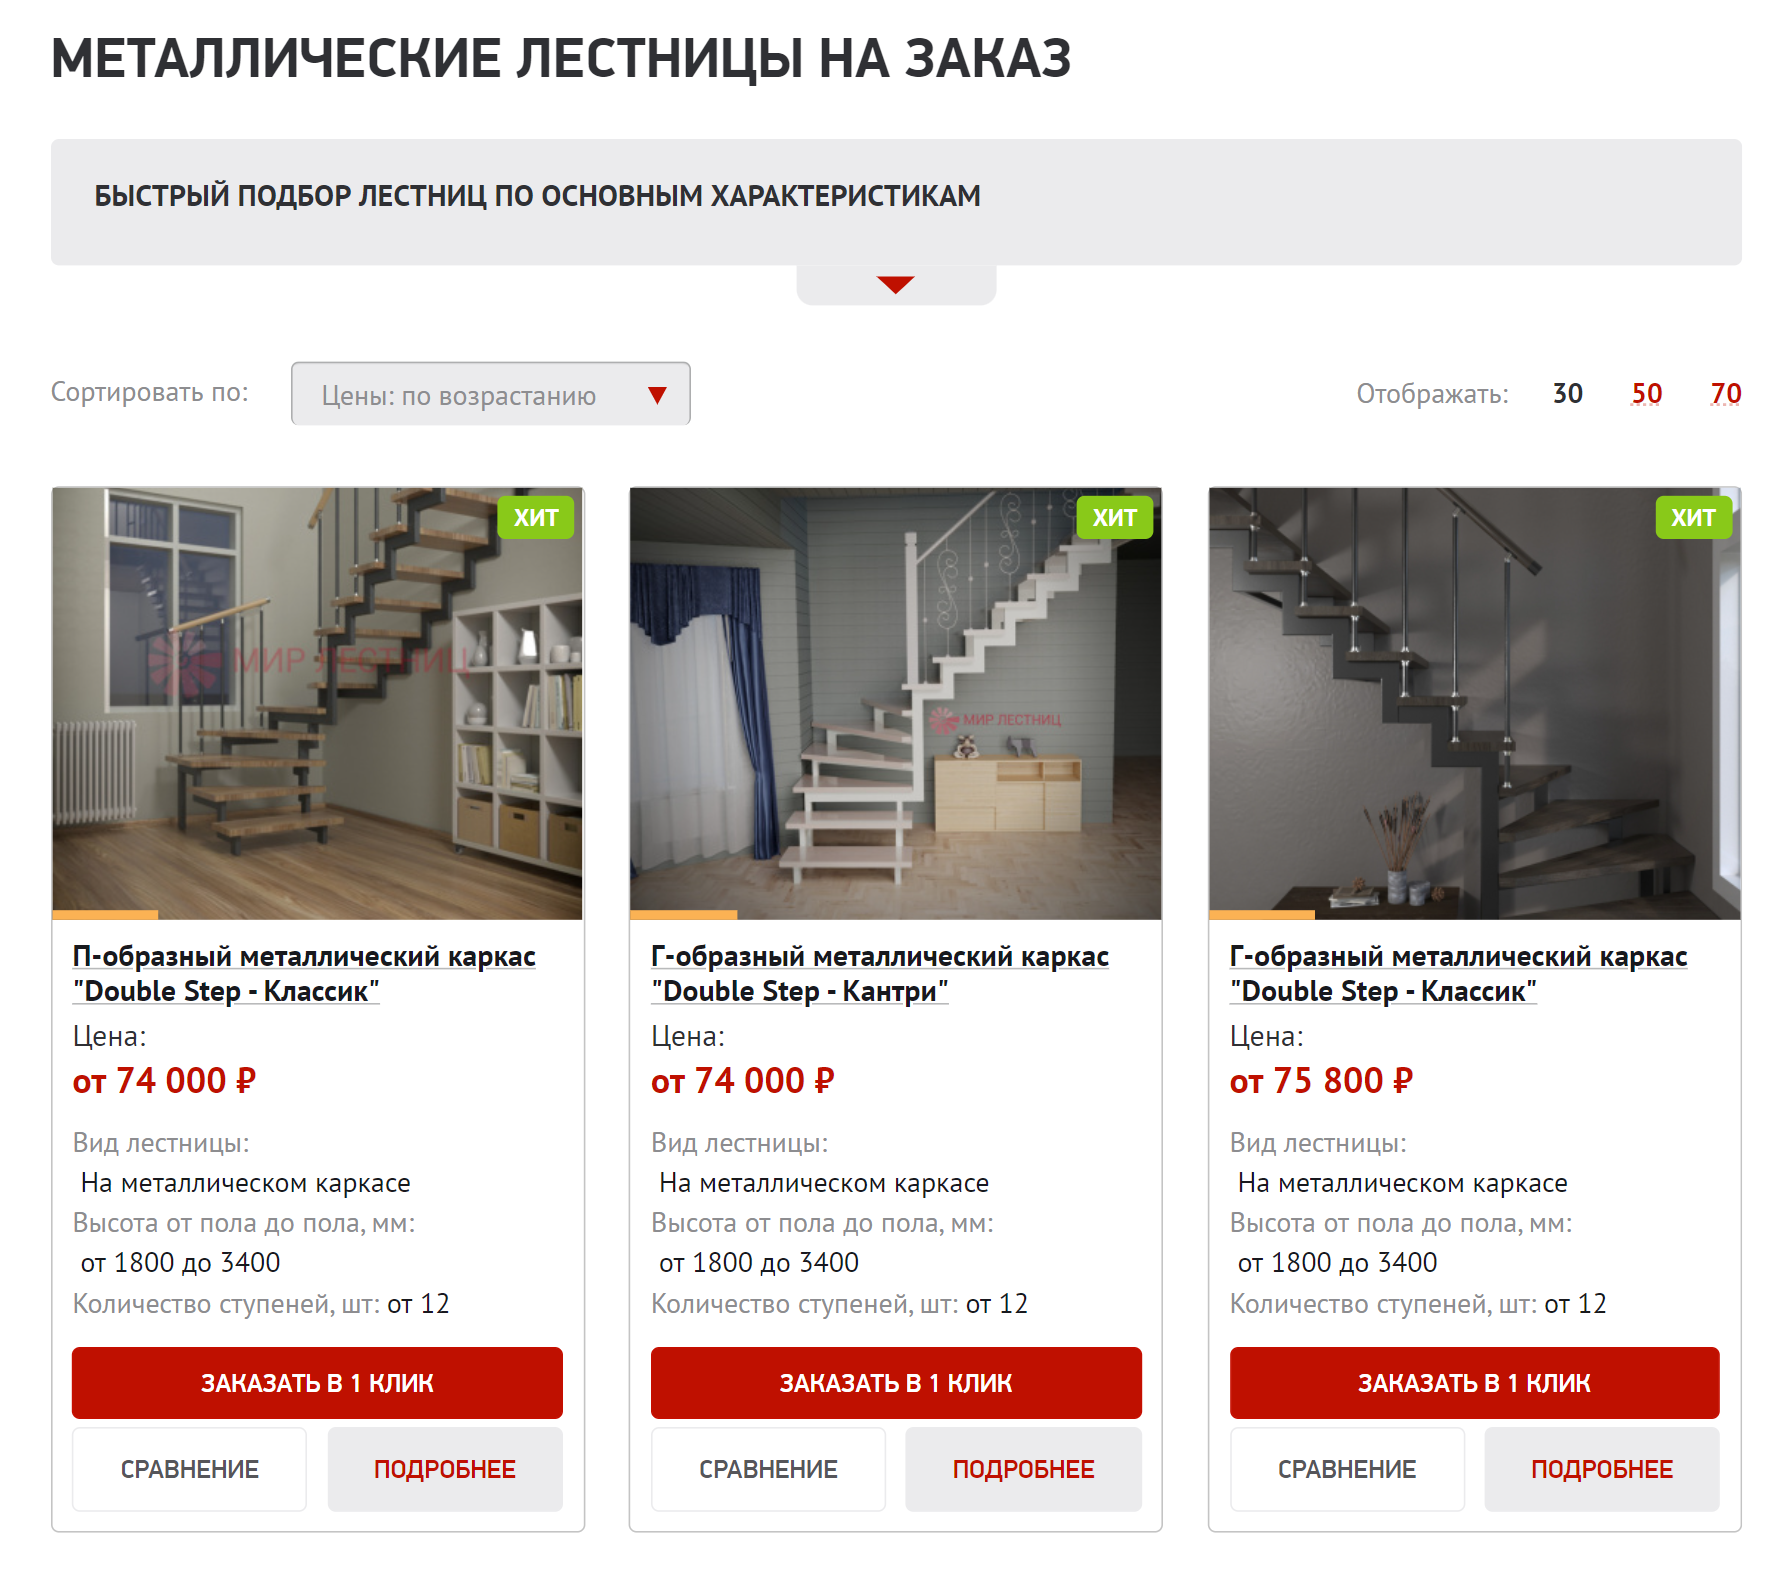 Стоимость металлического каркаса лестниц, то есть без ступеней — от 74 000 ₽. Итоговая цена лестницы зависит от типа каркаса, древесины ступеней и наличия ограждения. Источник: mir-lest.ru